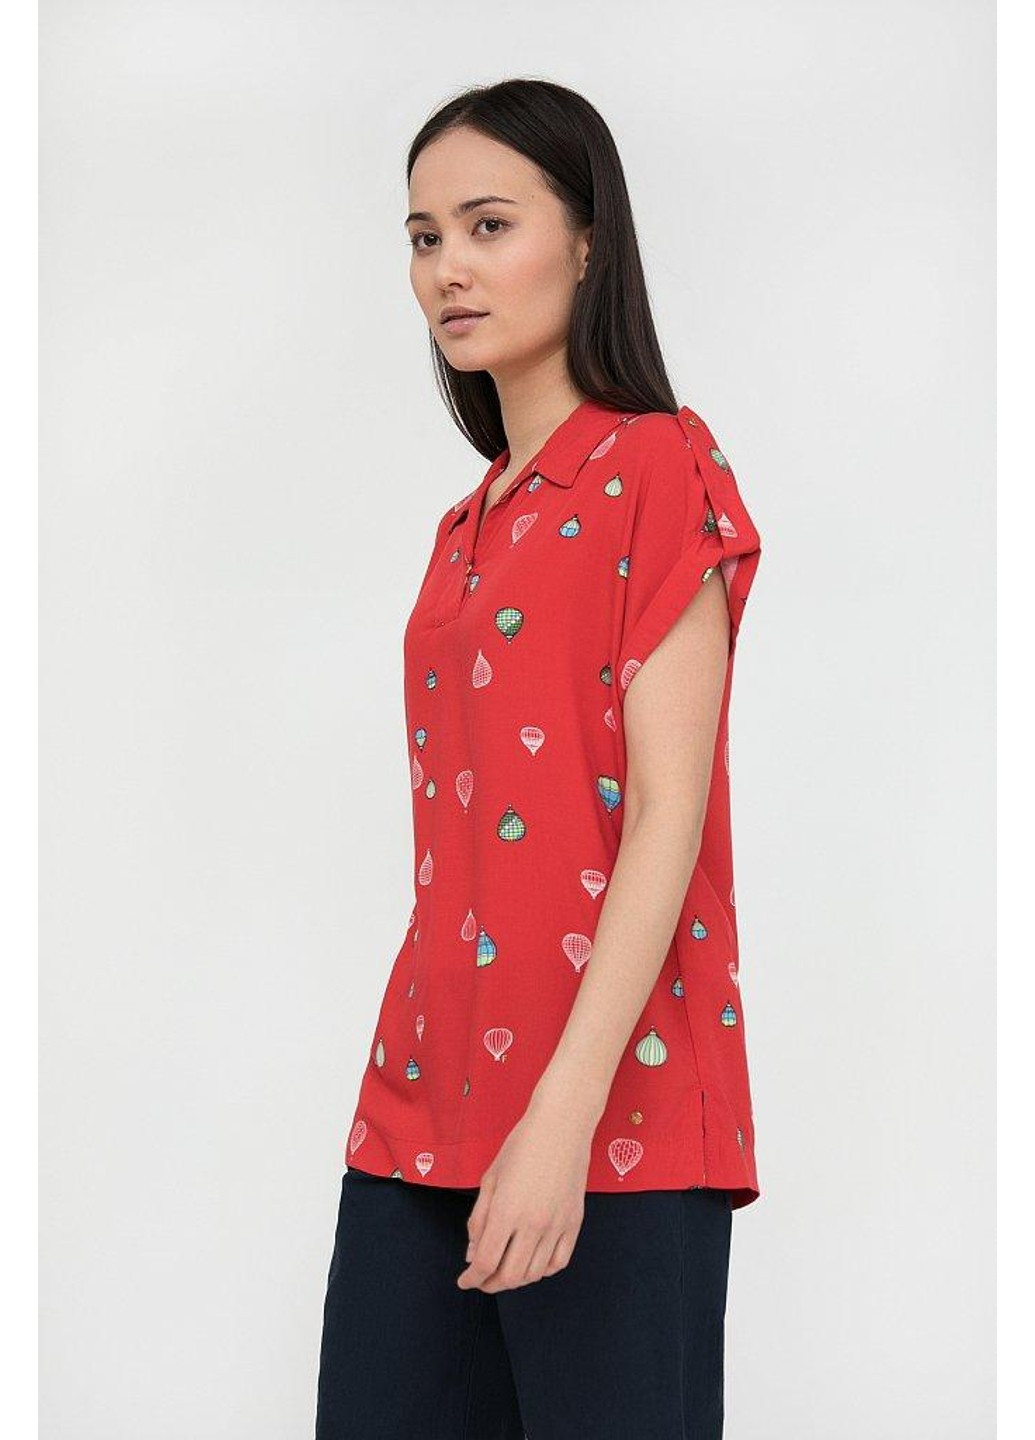 Червона літня блуза s20-14094-341 Finn Flare